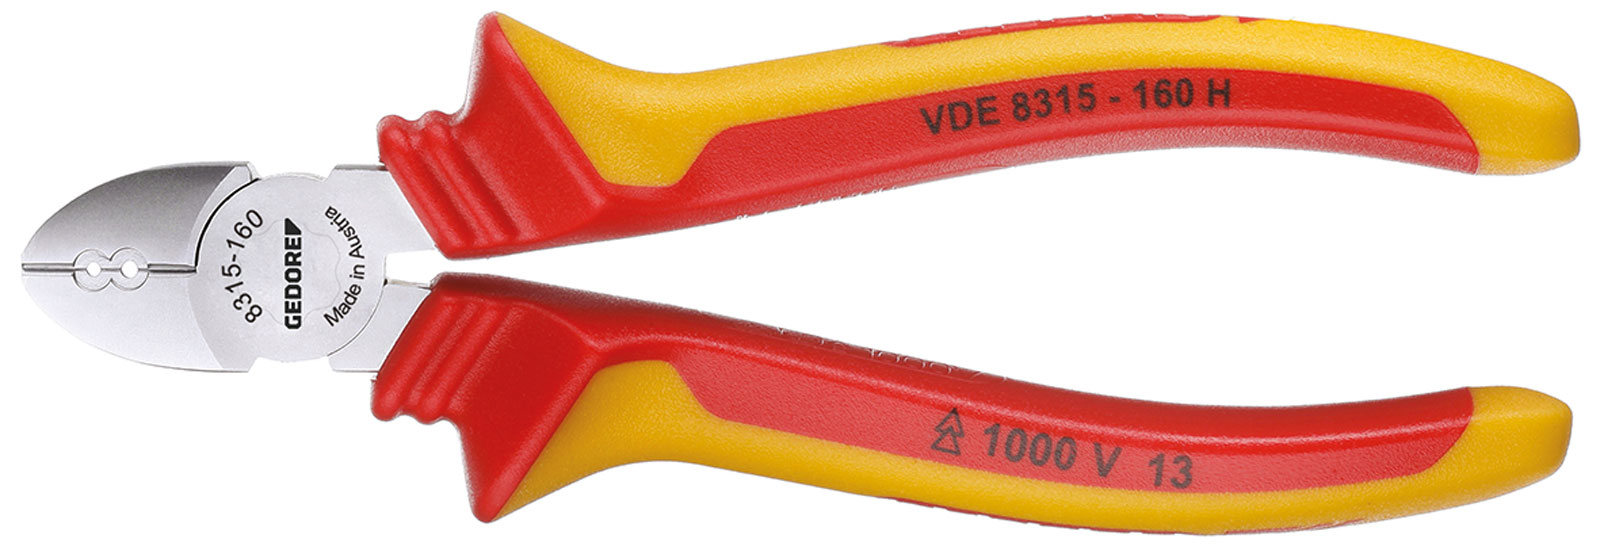 Image de VDE 8315-160 H VDE-Abisolier-Seitenschneider 160 mm